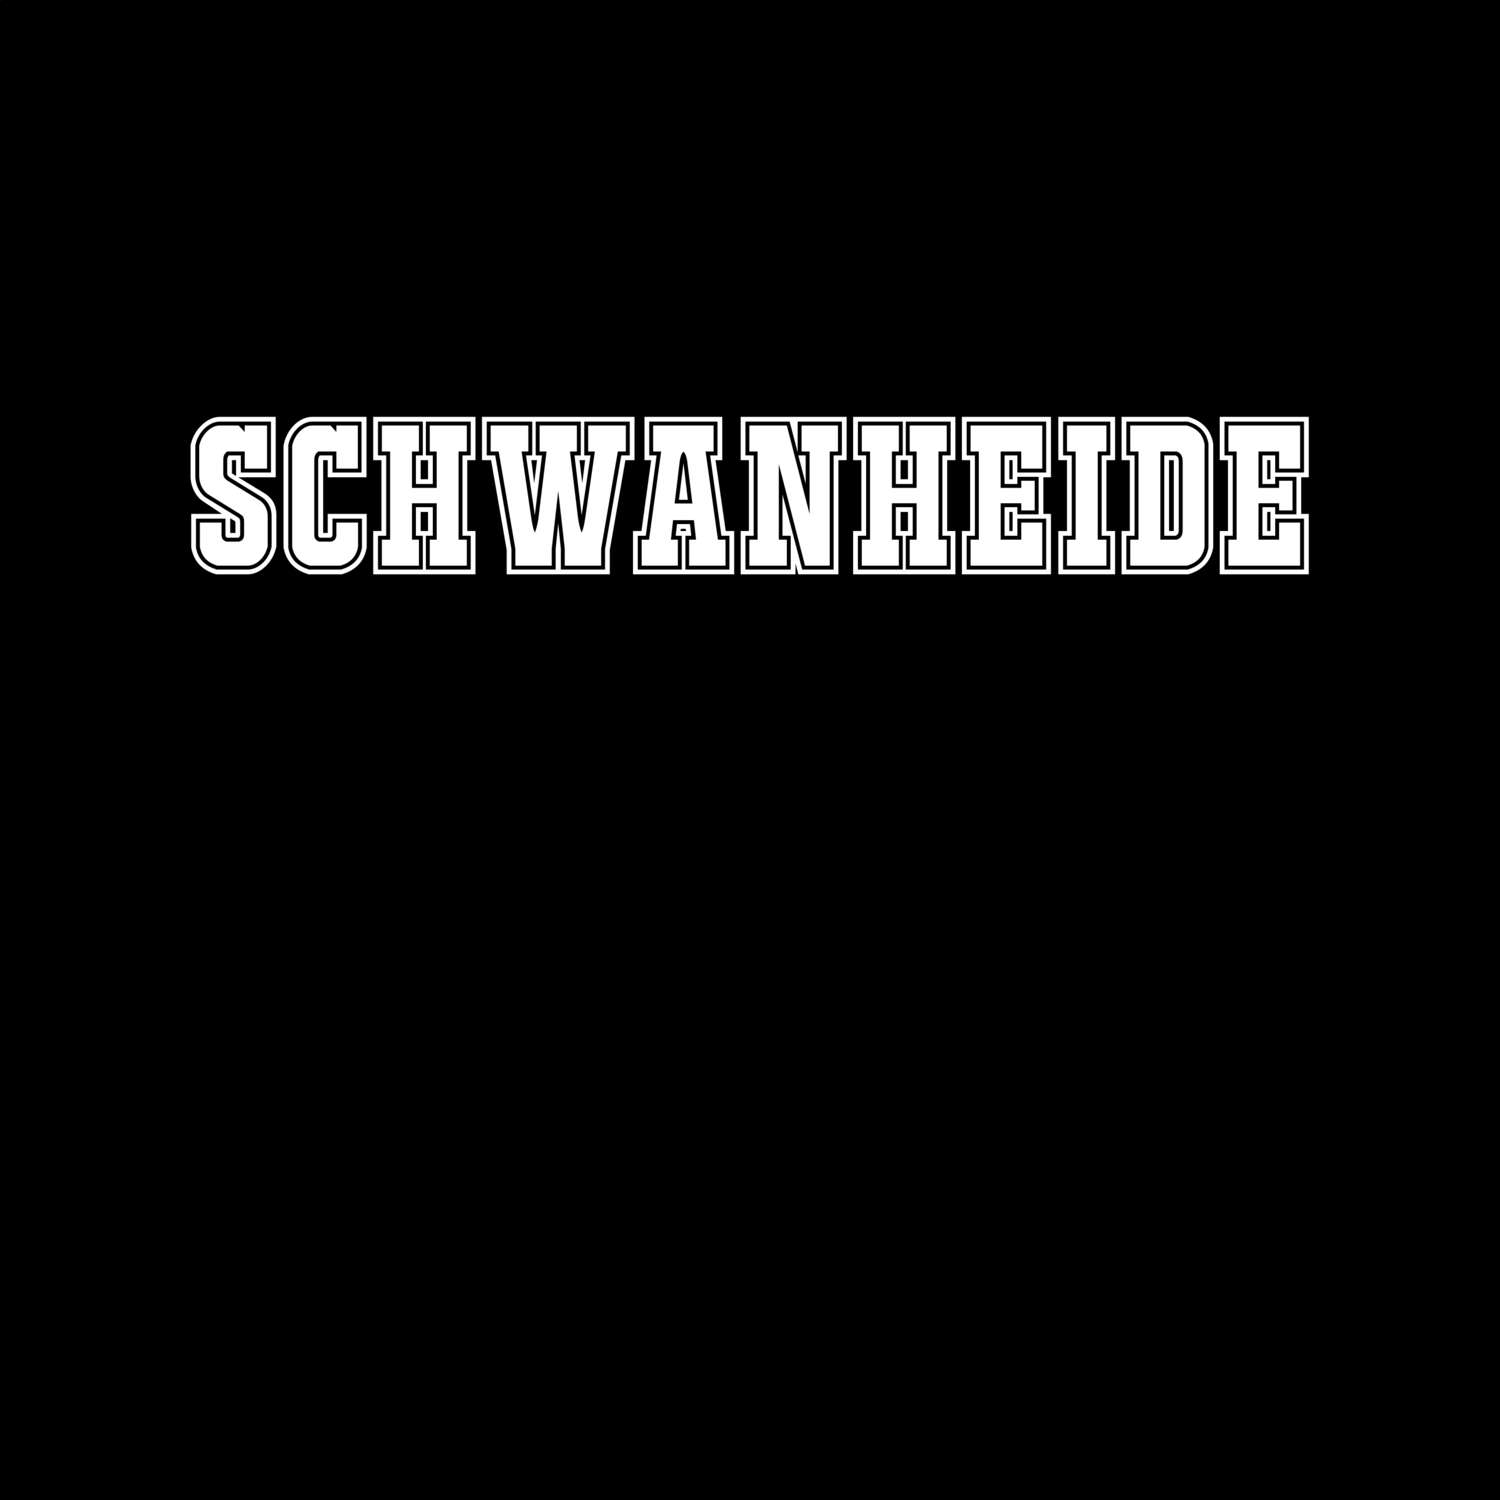 Schwanheide T-Shirt »Classic«